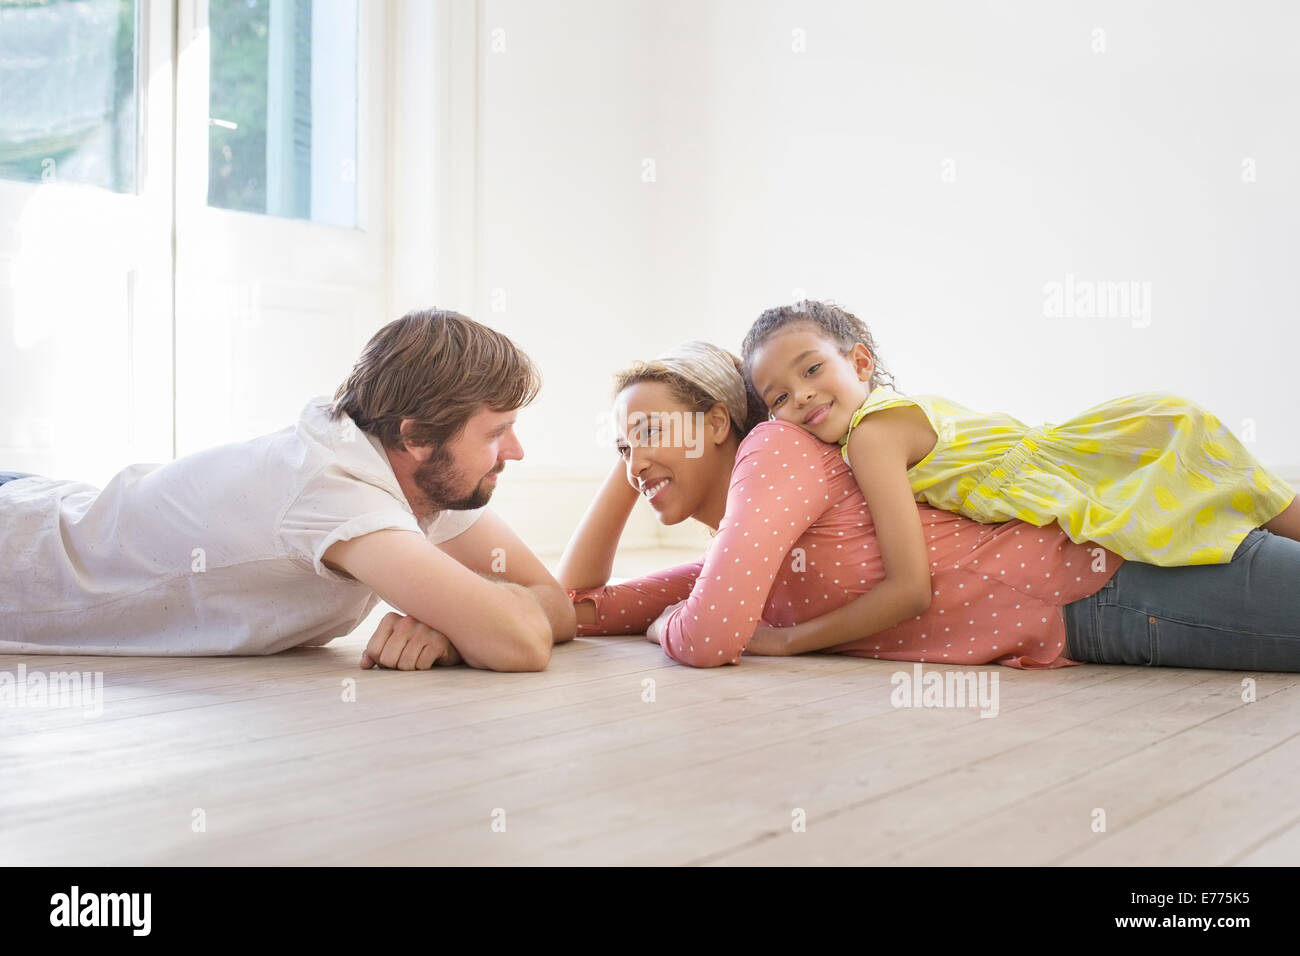 Famiglia posa sulla terra insieme in uno spazio soggiorno Foto Stock